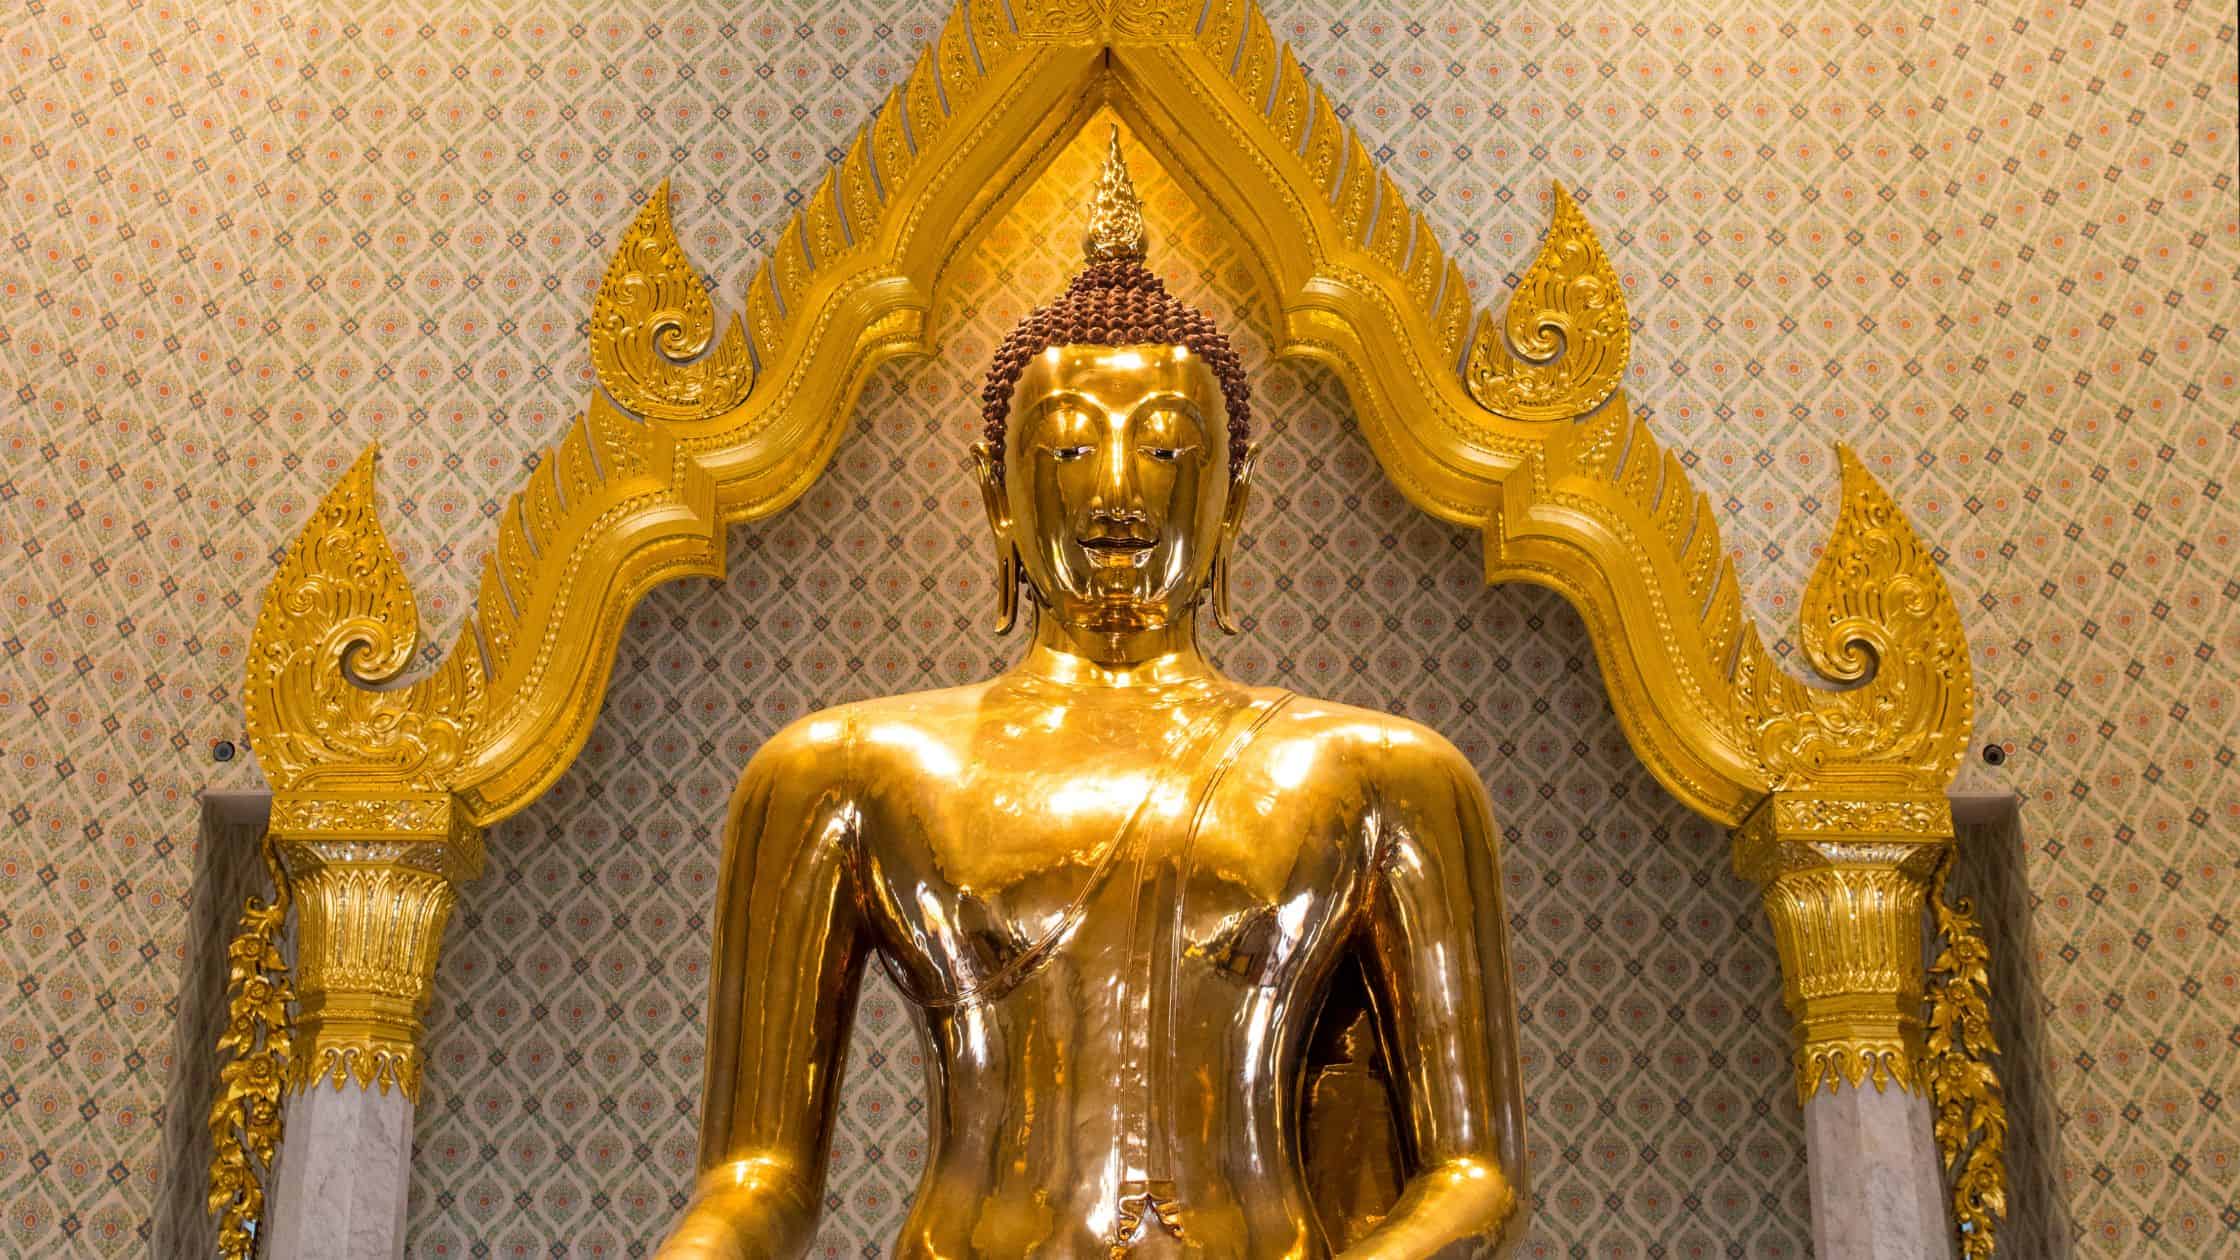 Golden Buddha in Thailand